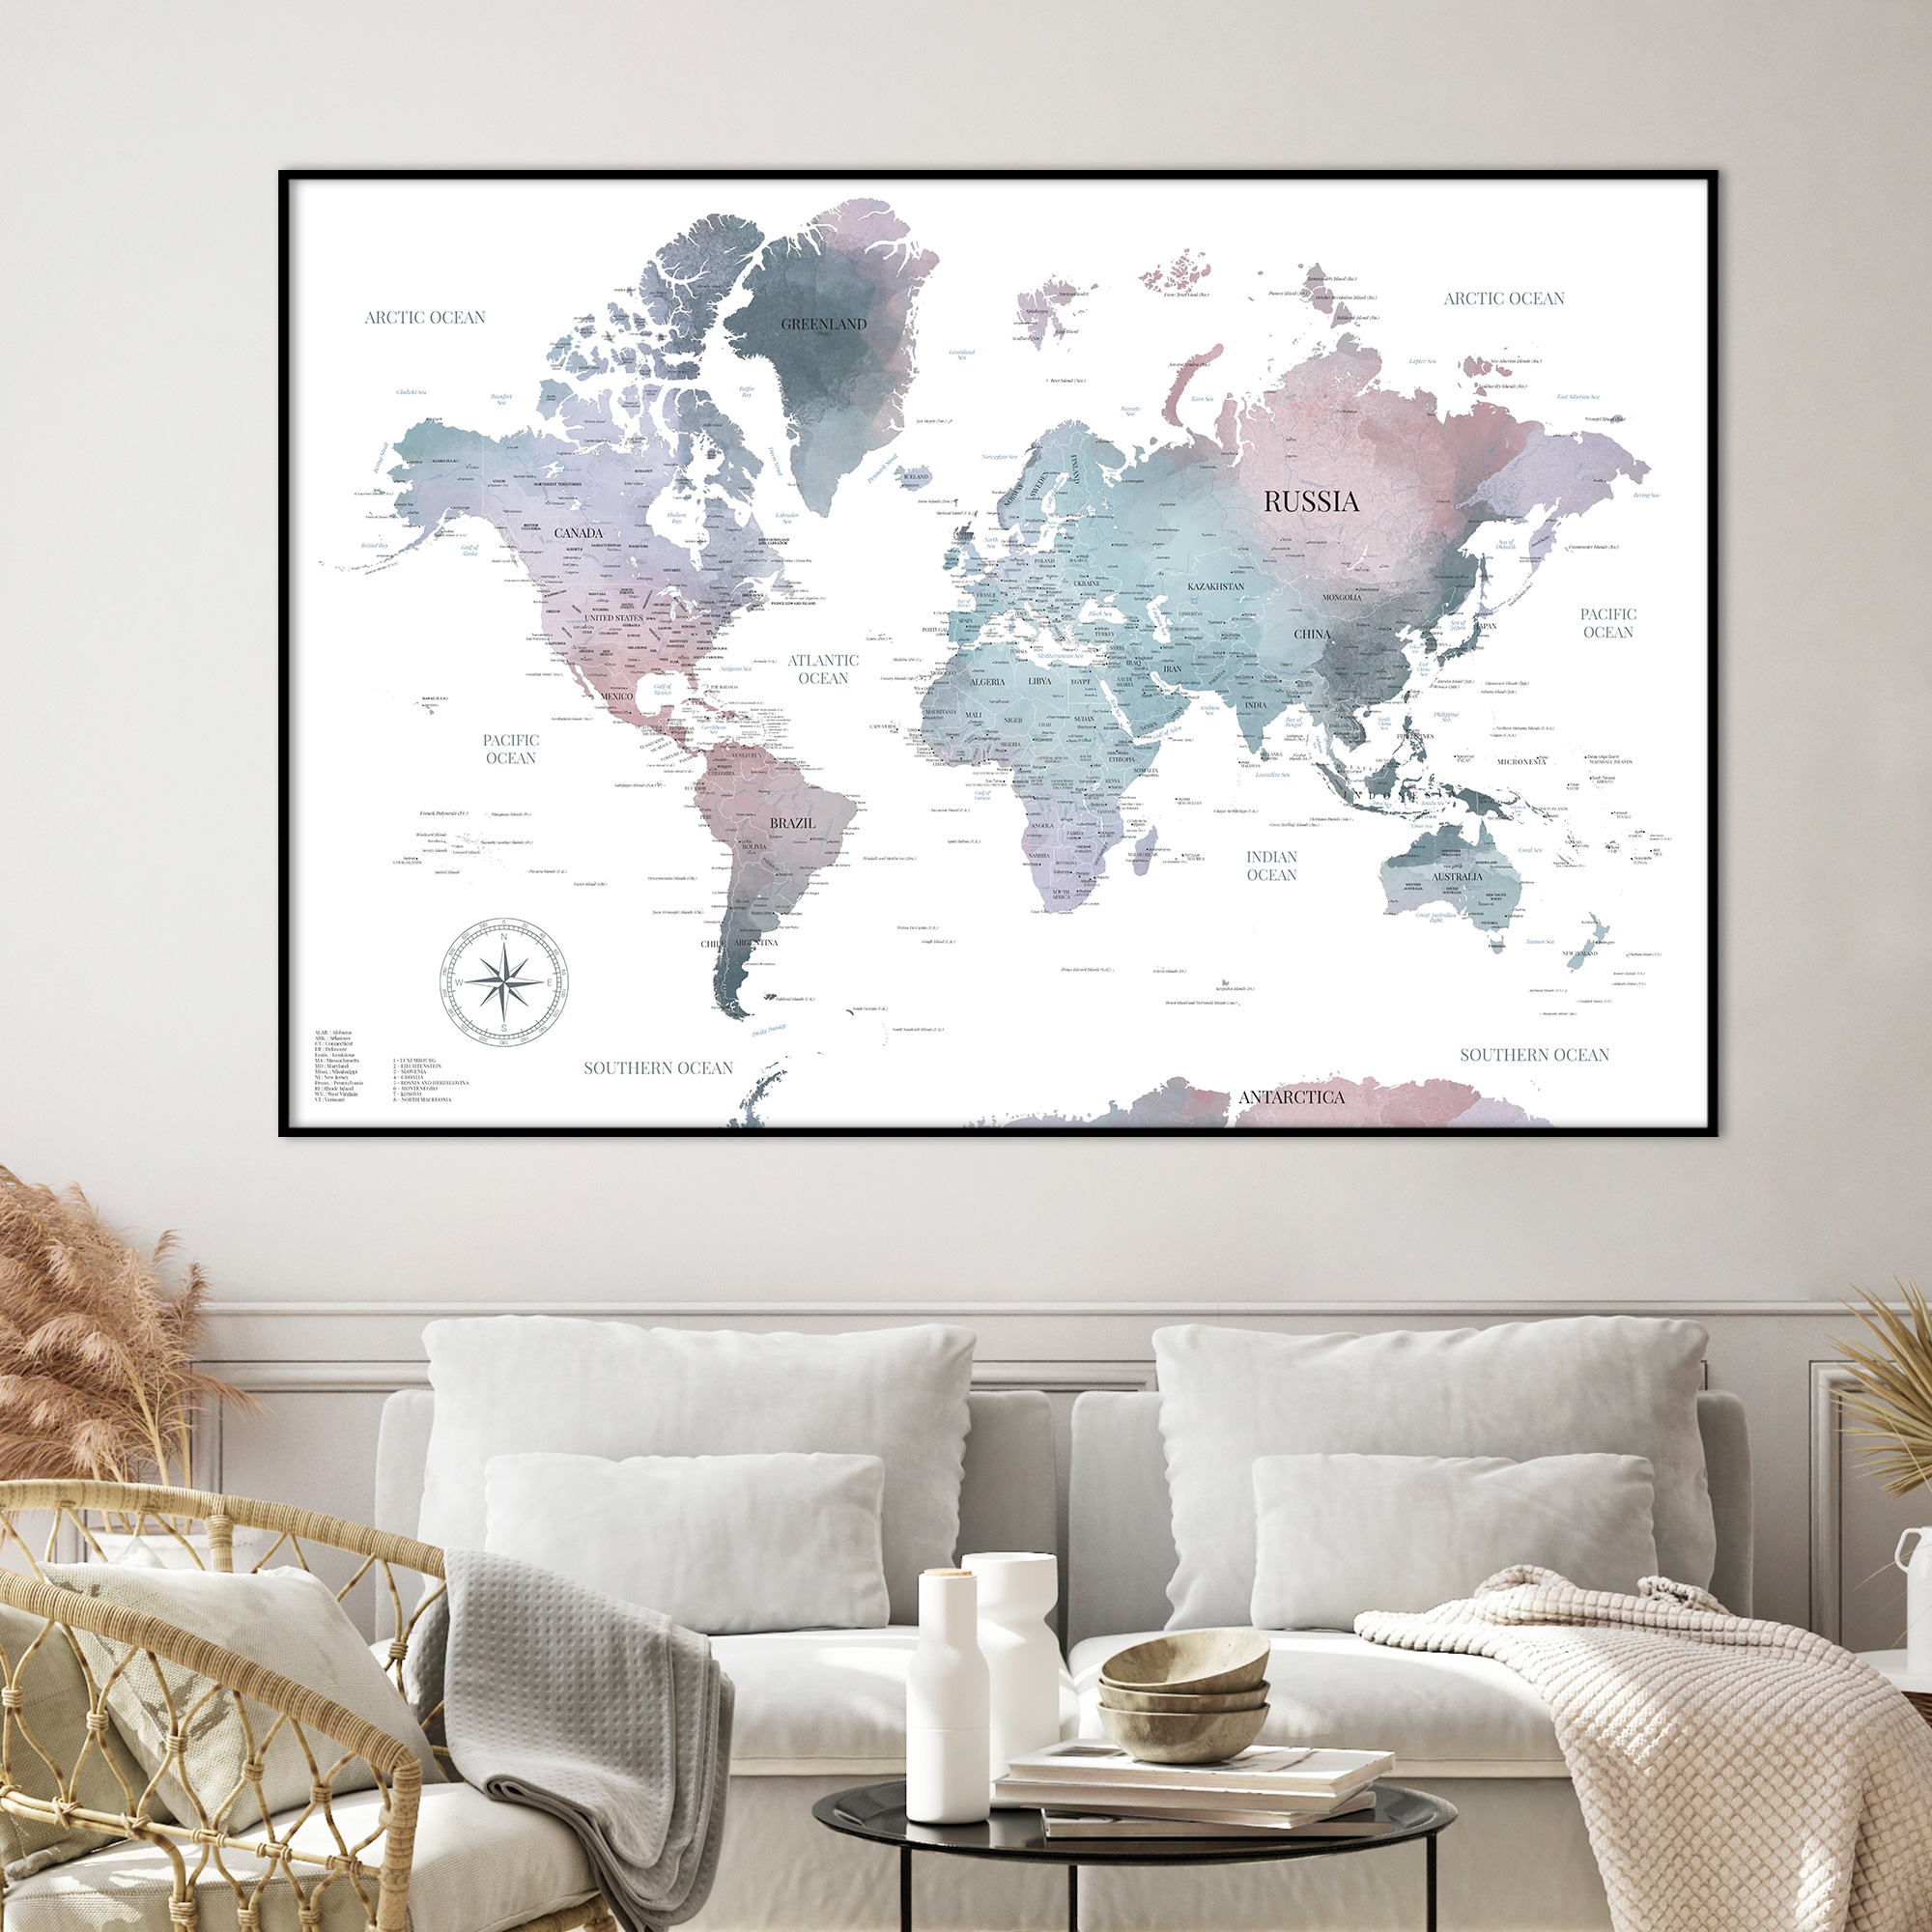 Mappemonde aquarelle Pénélope, une carte du monde murale aux couleurs pastels bleutées et rosées